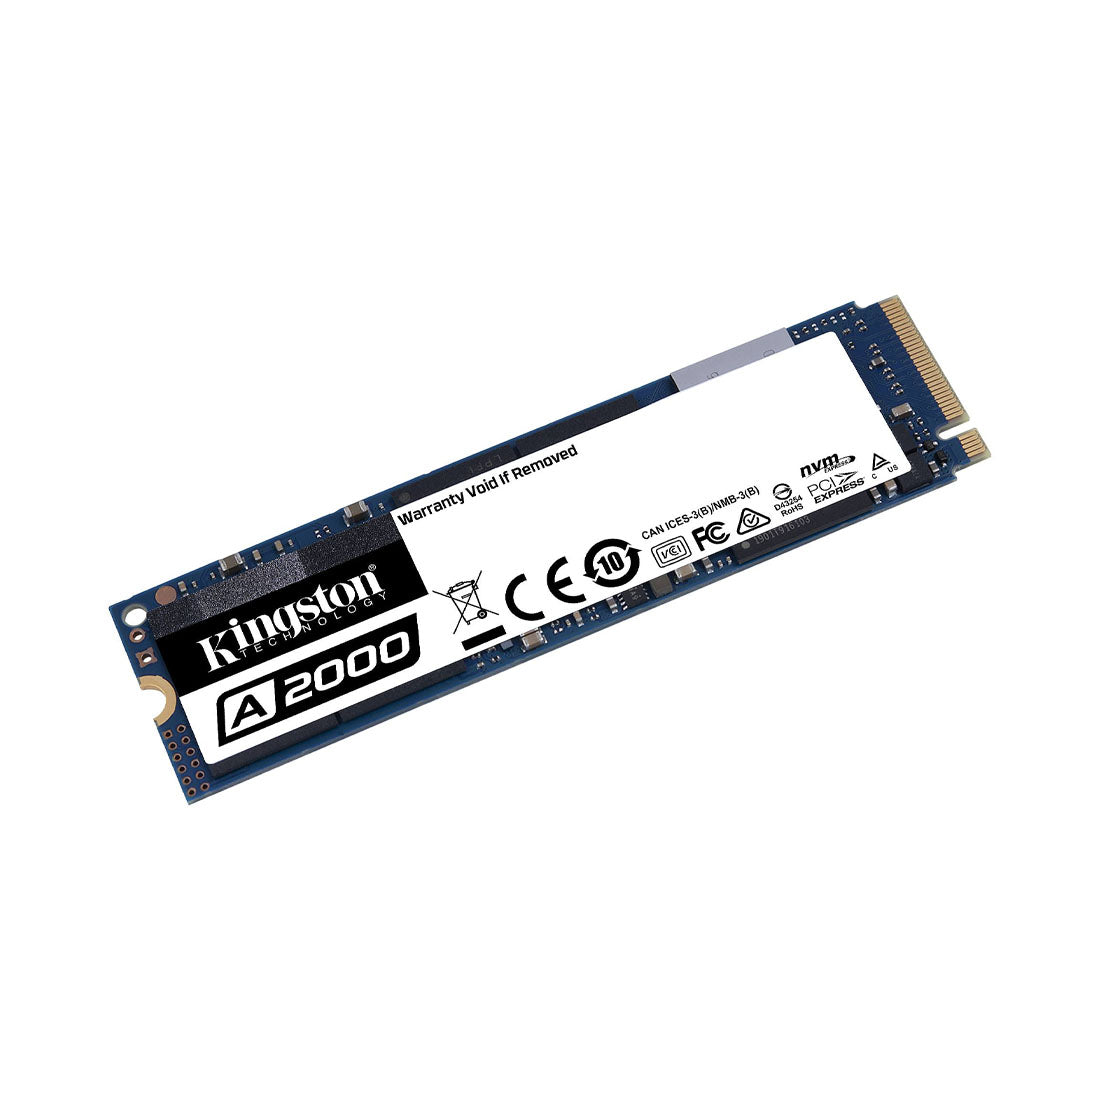 [रिपैक्ड] किंग्स्टन A2000 250GB M.2 2280 NVMe PCIe इंटरनल SSD